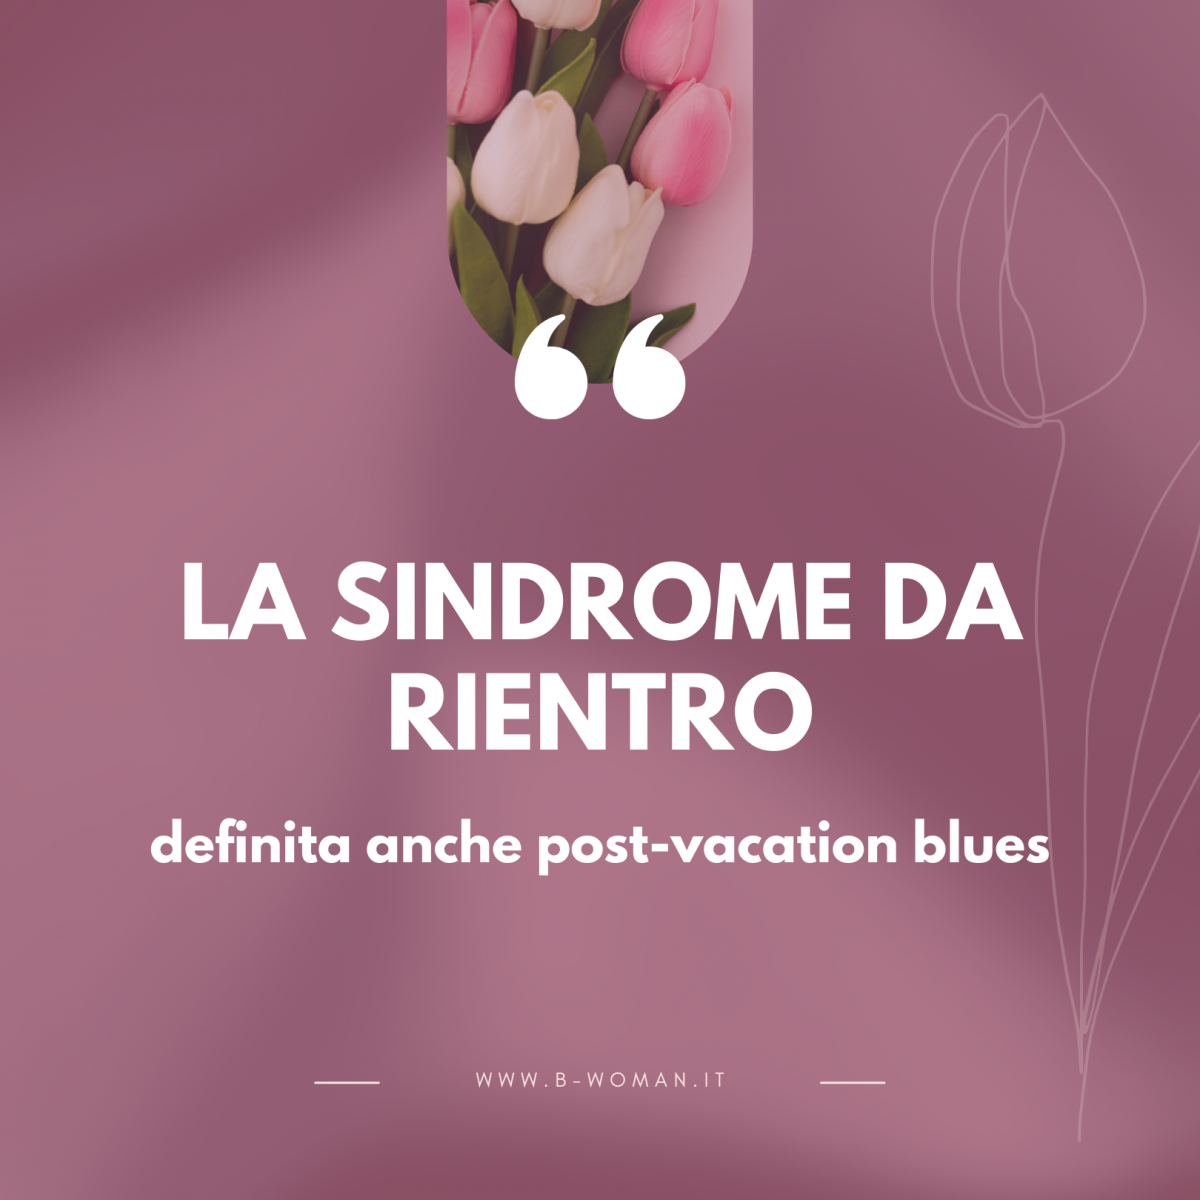 La-sindrome-da-rientro--1200x1200.png